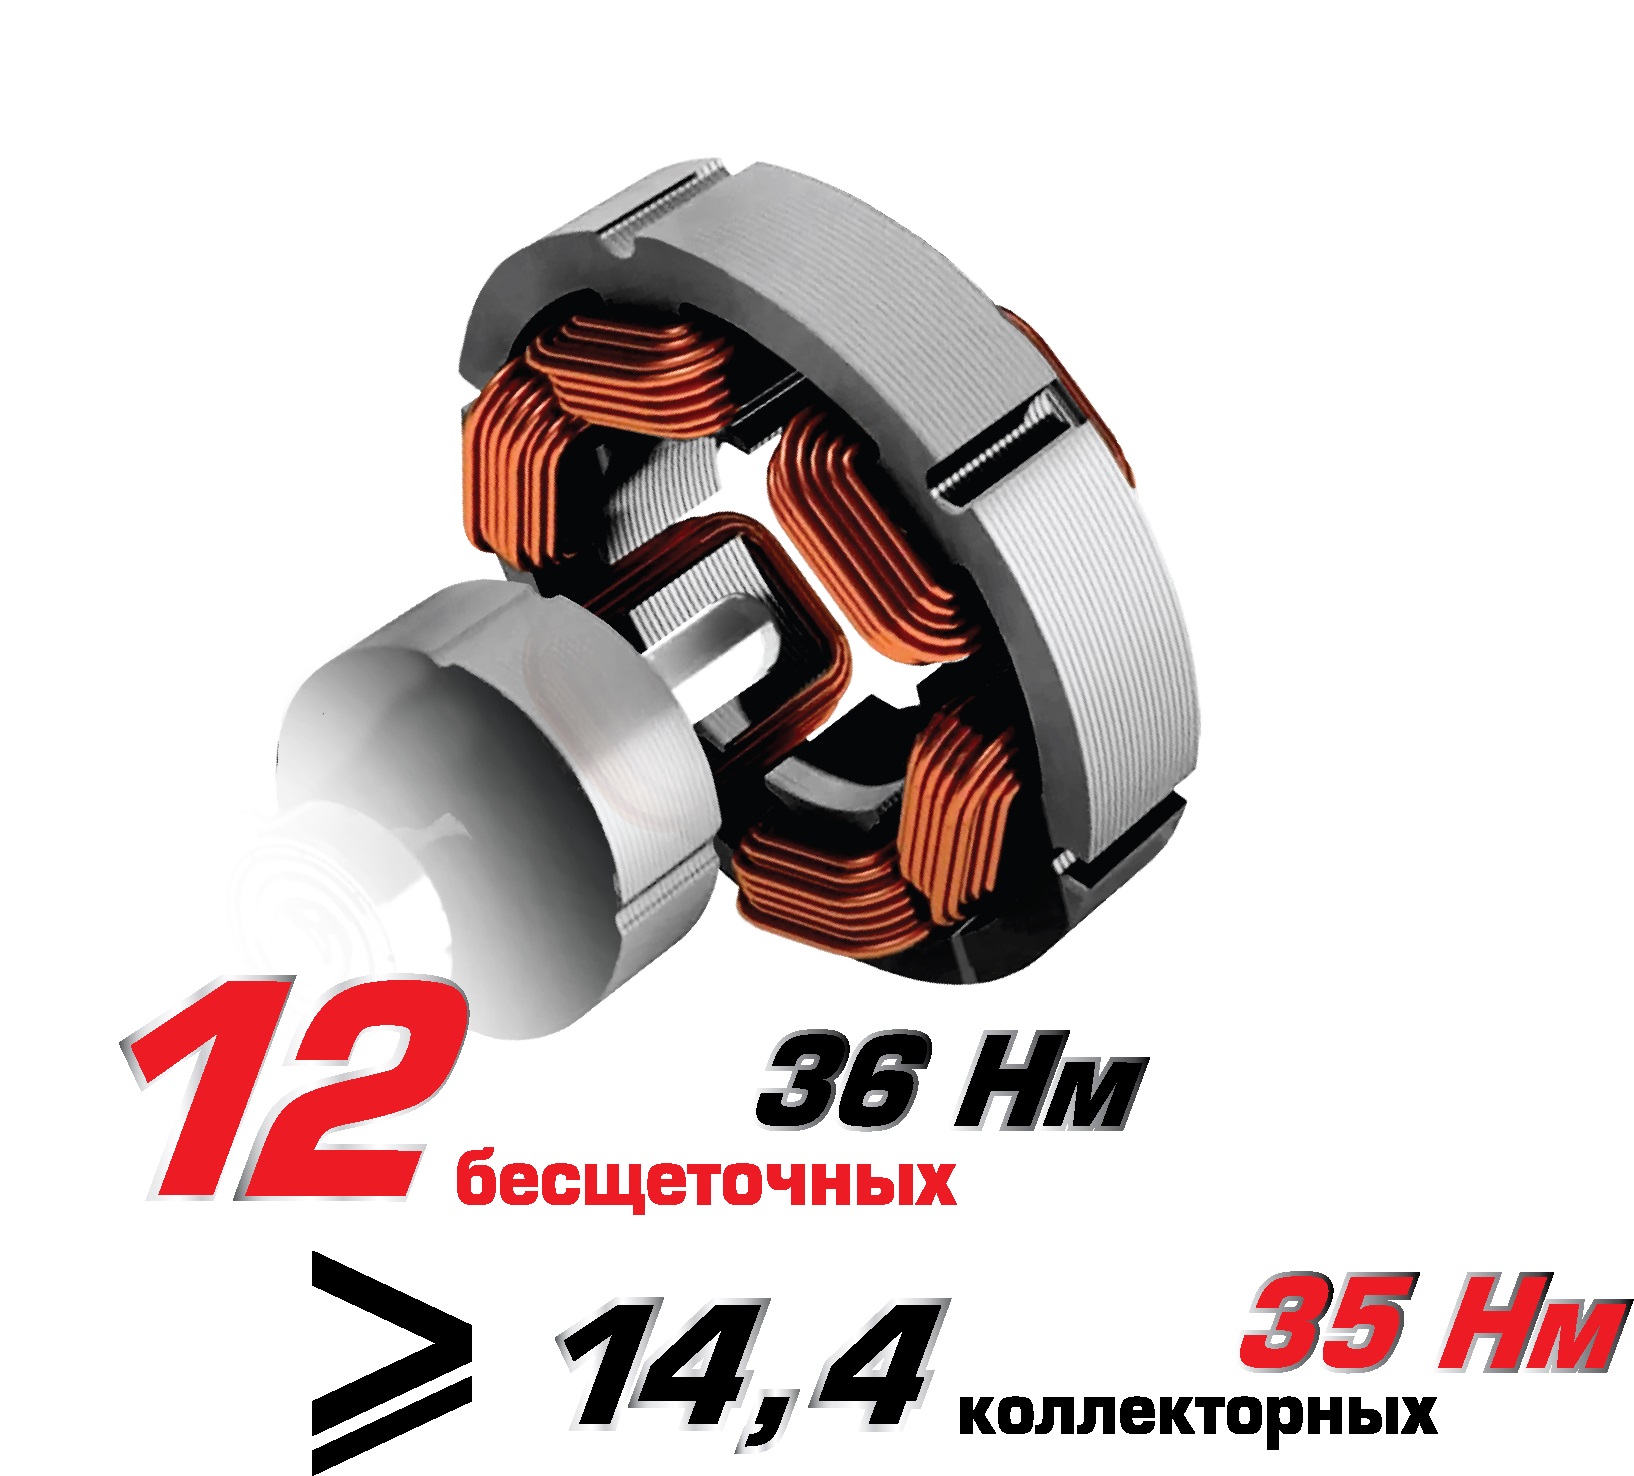 besshchetochnaya-akkumulyatornaya-drel-shurupovert-interskol-da-1012v (4)